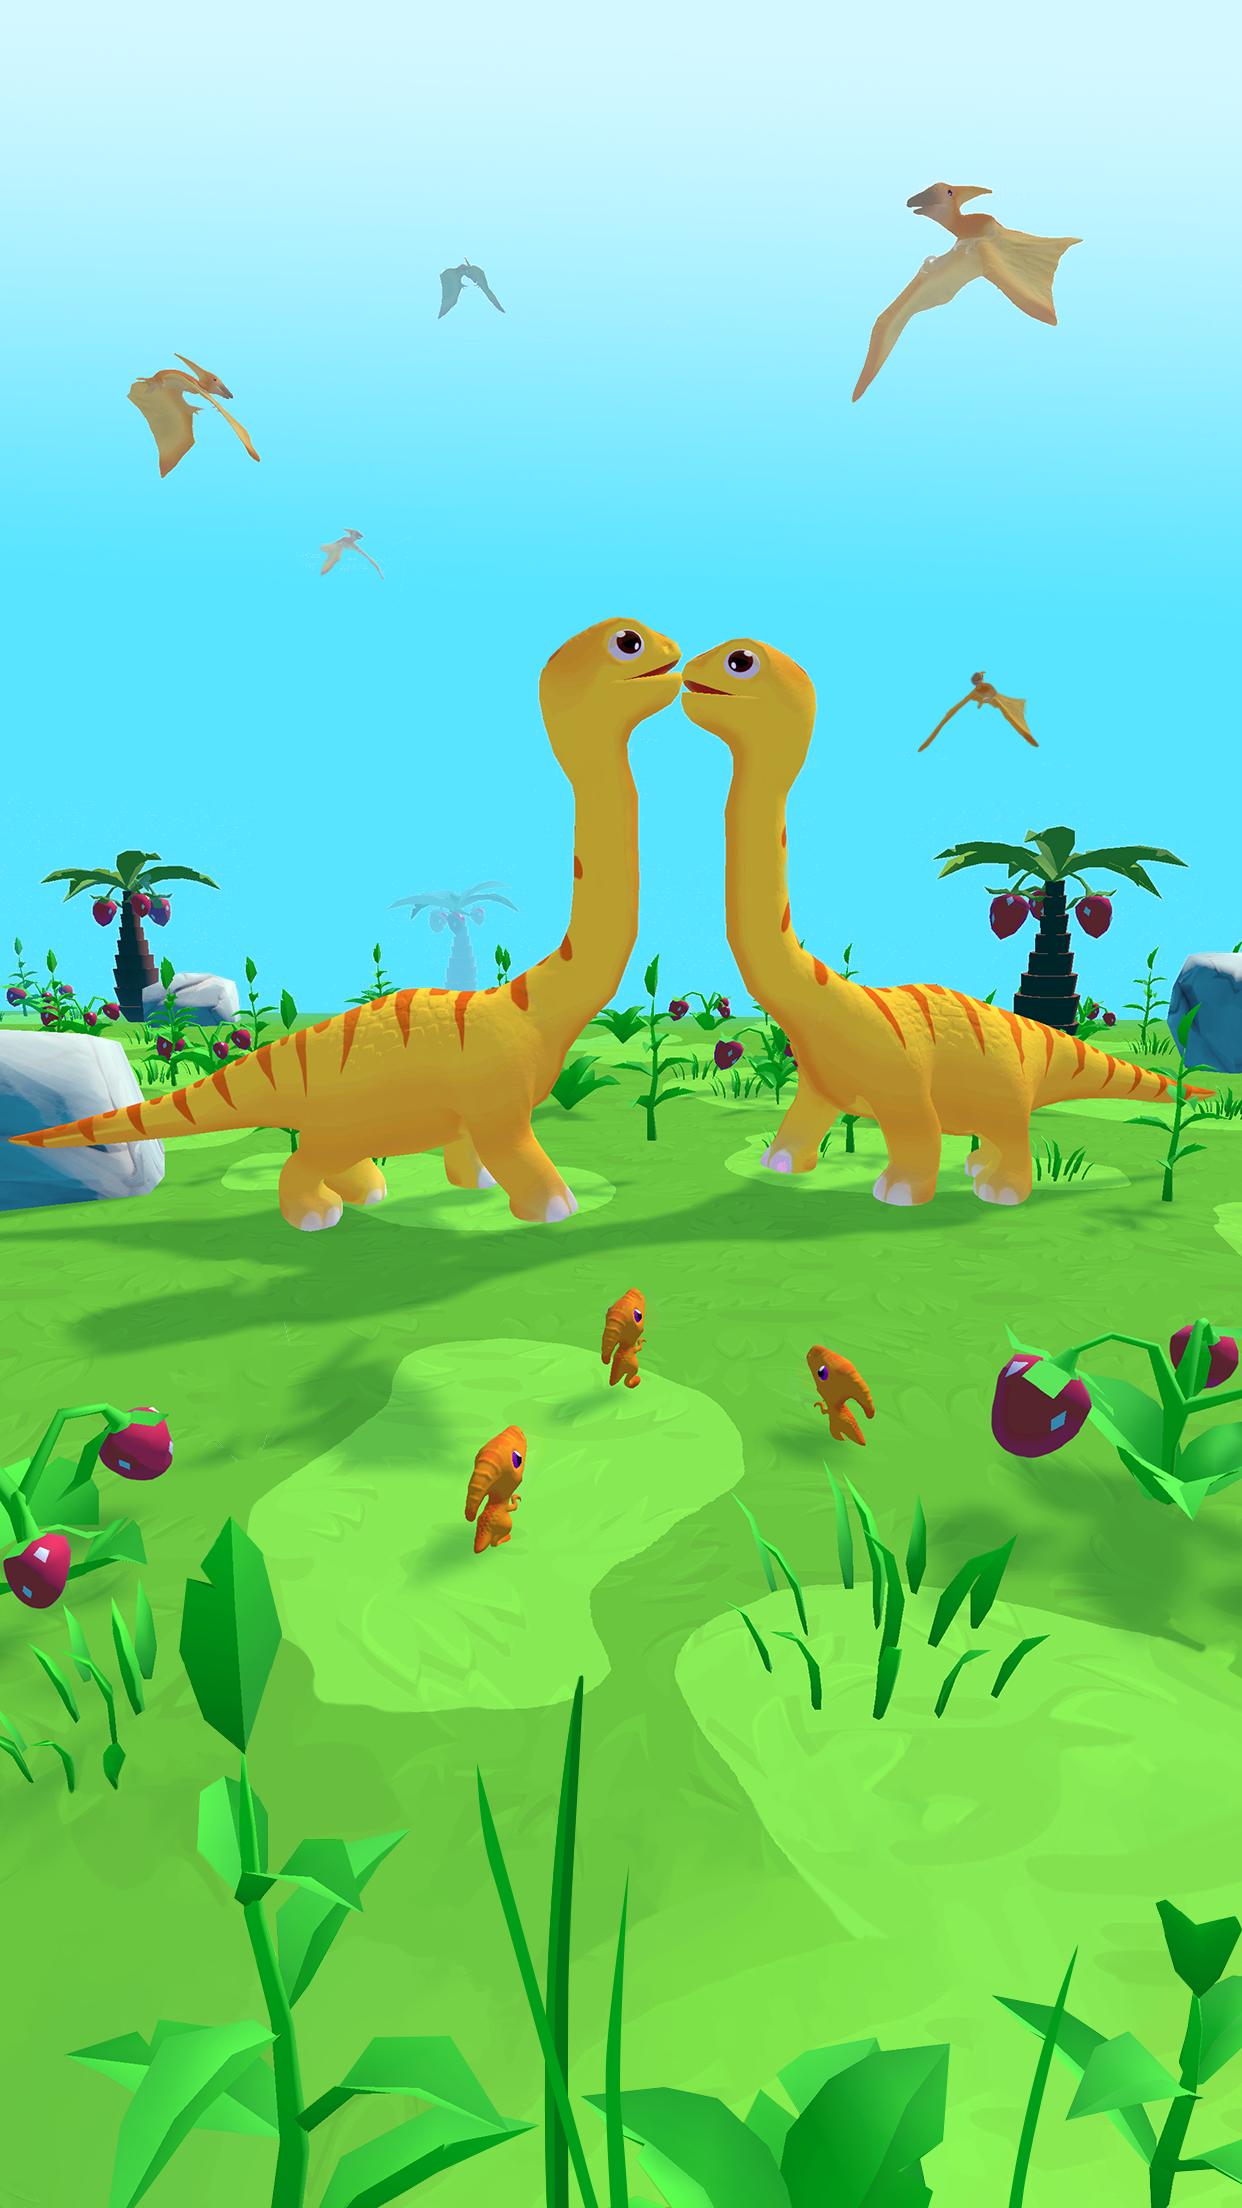 بازی Dino Evolution Run 3D - دانلود